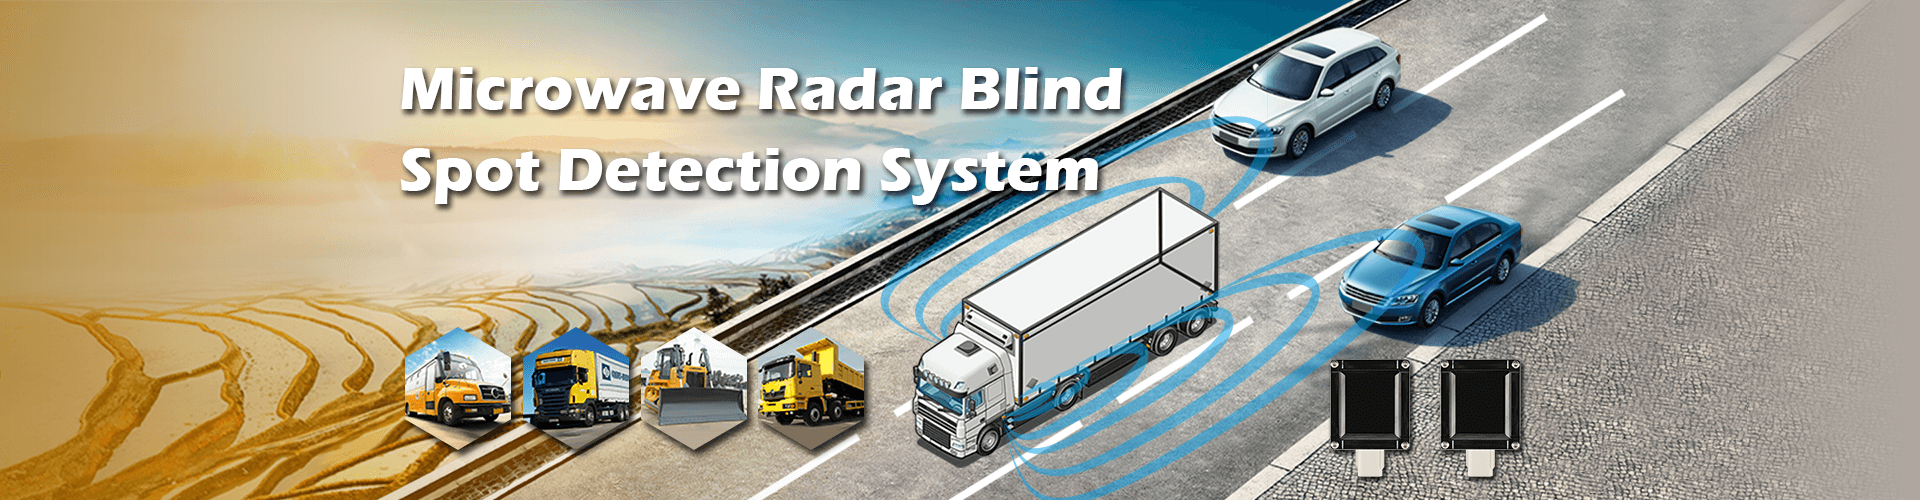 Sistema de detección de punto ciego con radar de microondas 24G / 77G